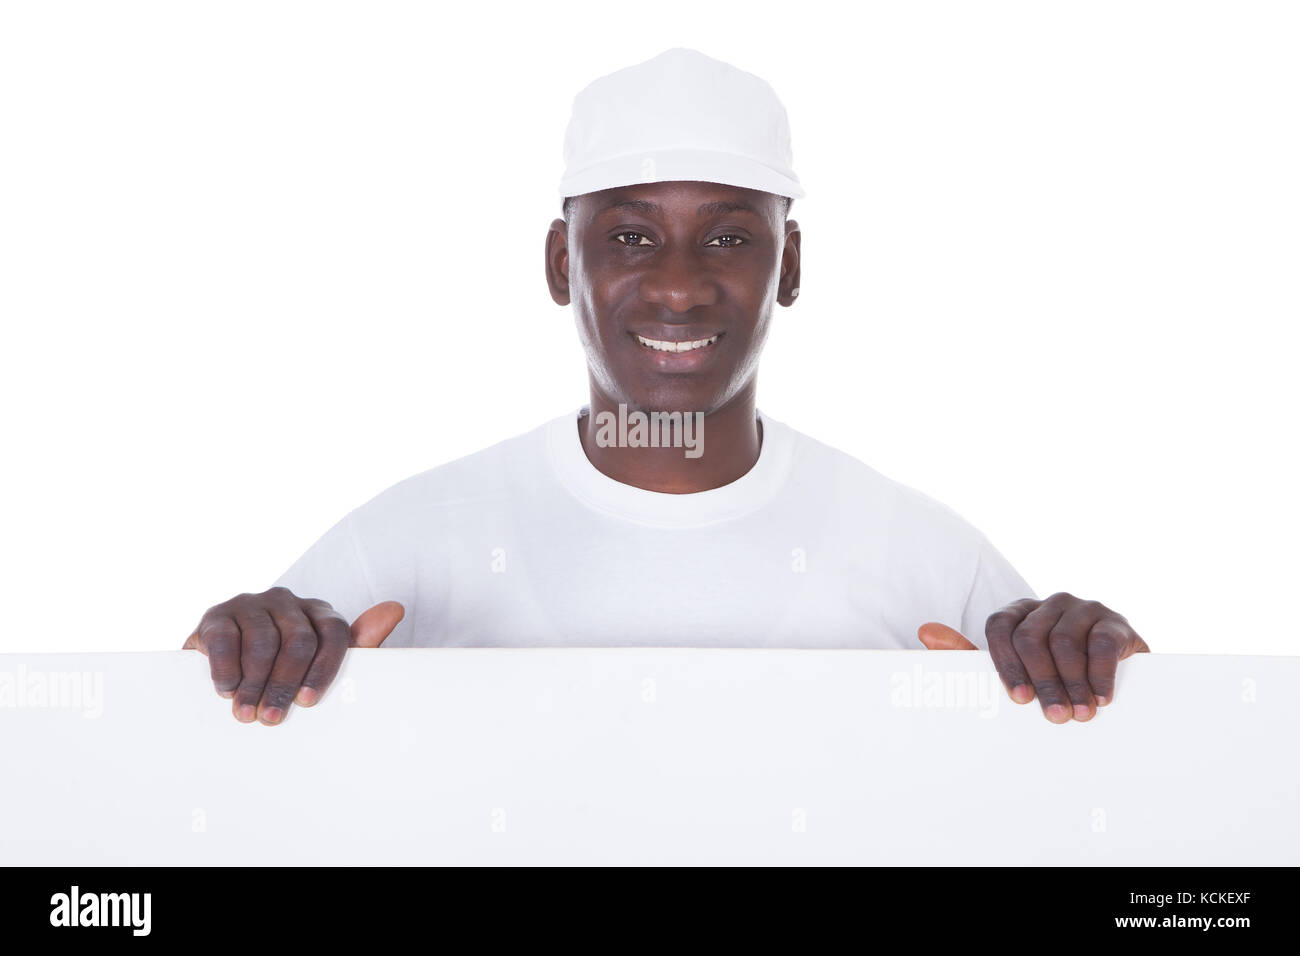 Ritratto del pittore maschio Holding Blank Banner bianco su sfondo bianco Foto Stock